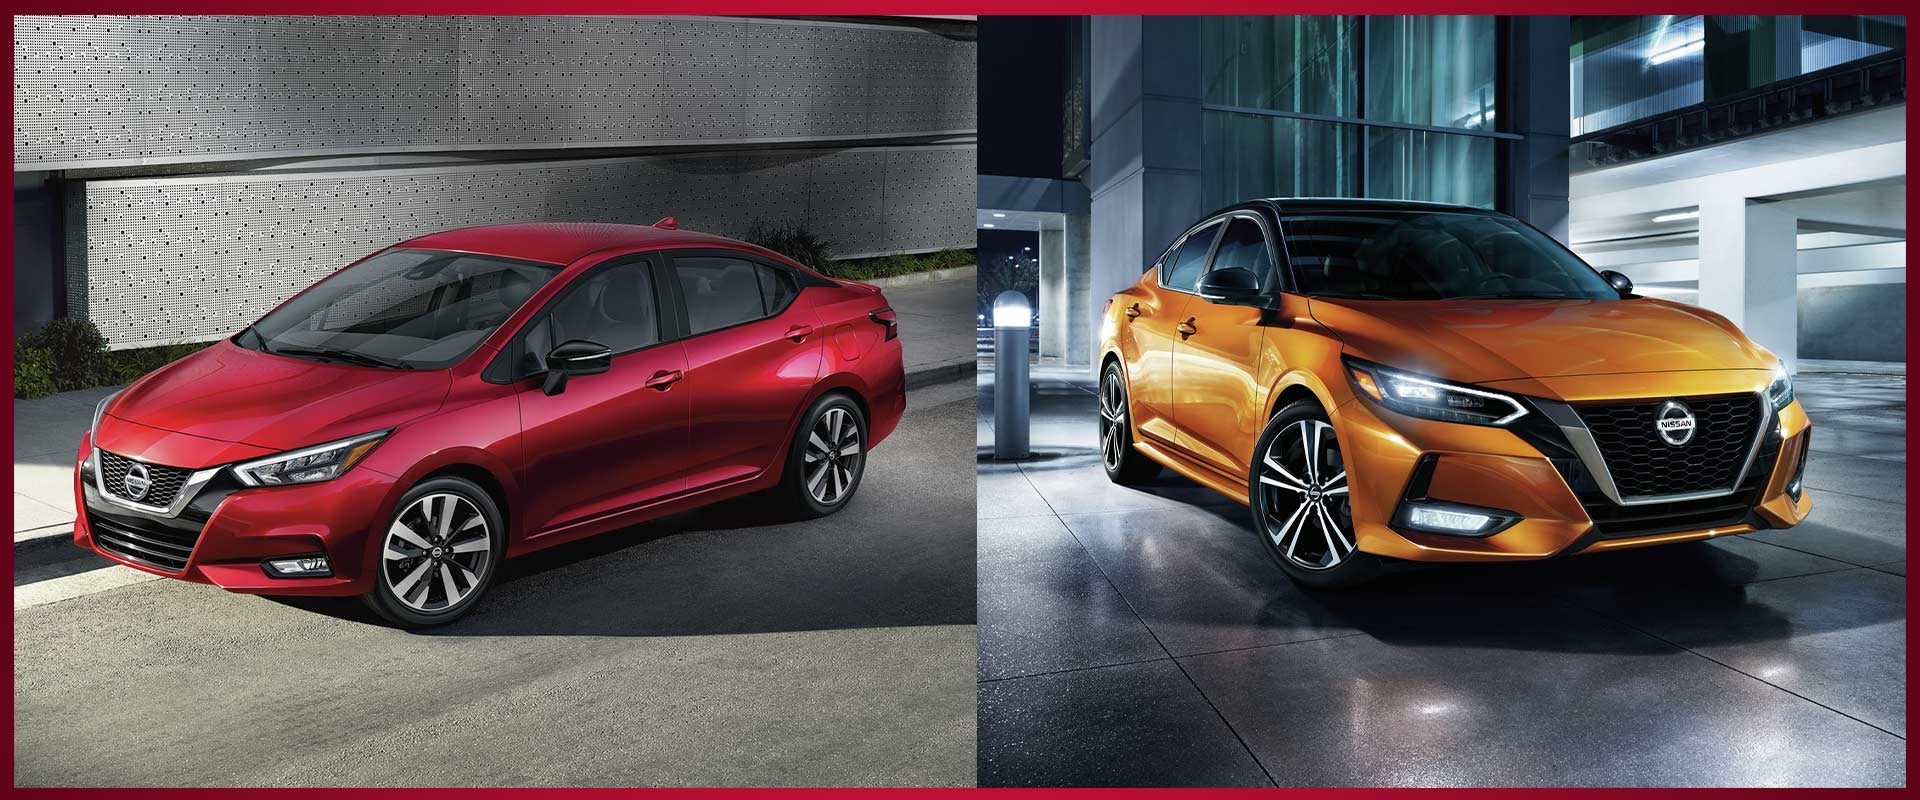 Nissan Versa S vs. Nissan Sentra S Comparing Sedans Shop Now